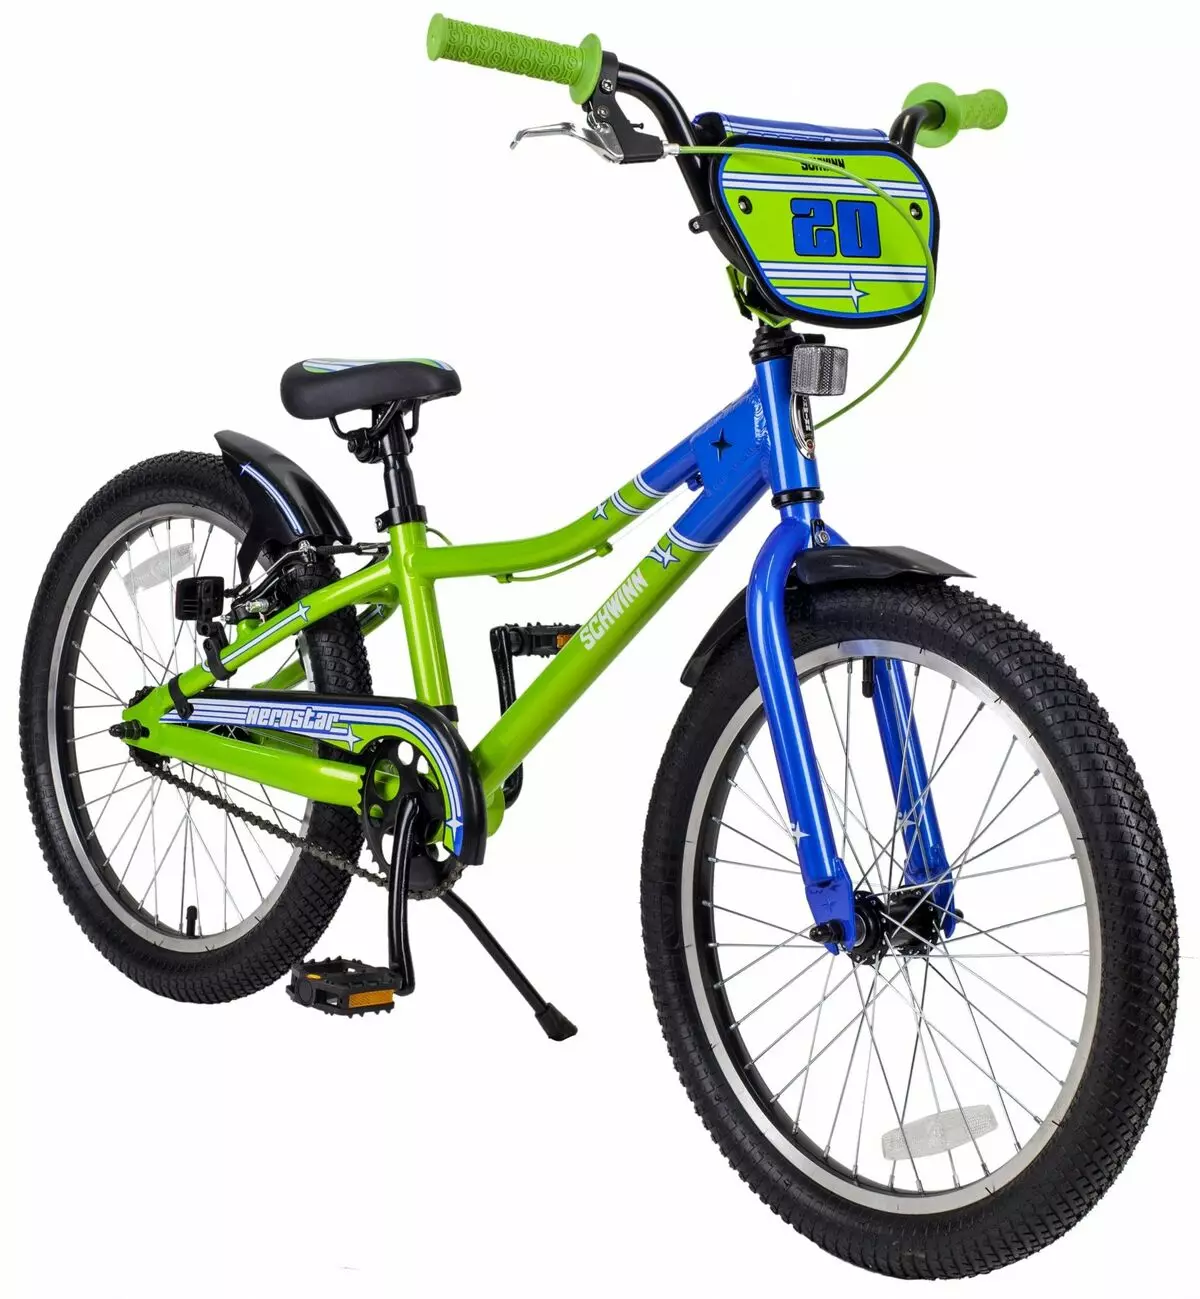 Купить подростковый велосипед для мальчика 10 лет. Велосипед Schwinn Aerostar. Велосипед подростковый Швин. Schwinn подростковый велосипед. Schwinn Aerostar детский.